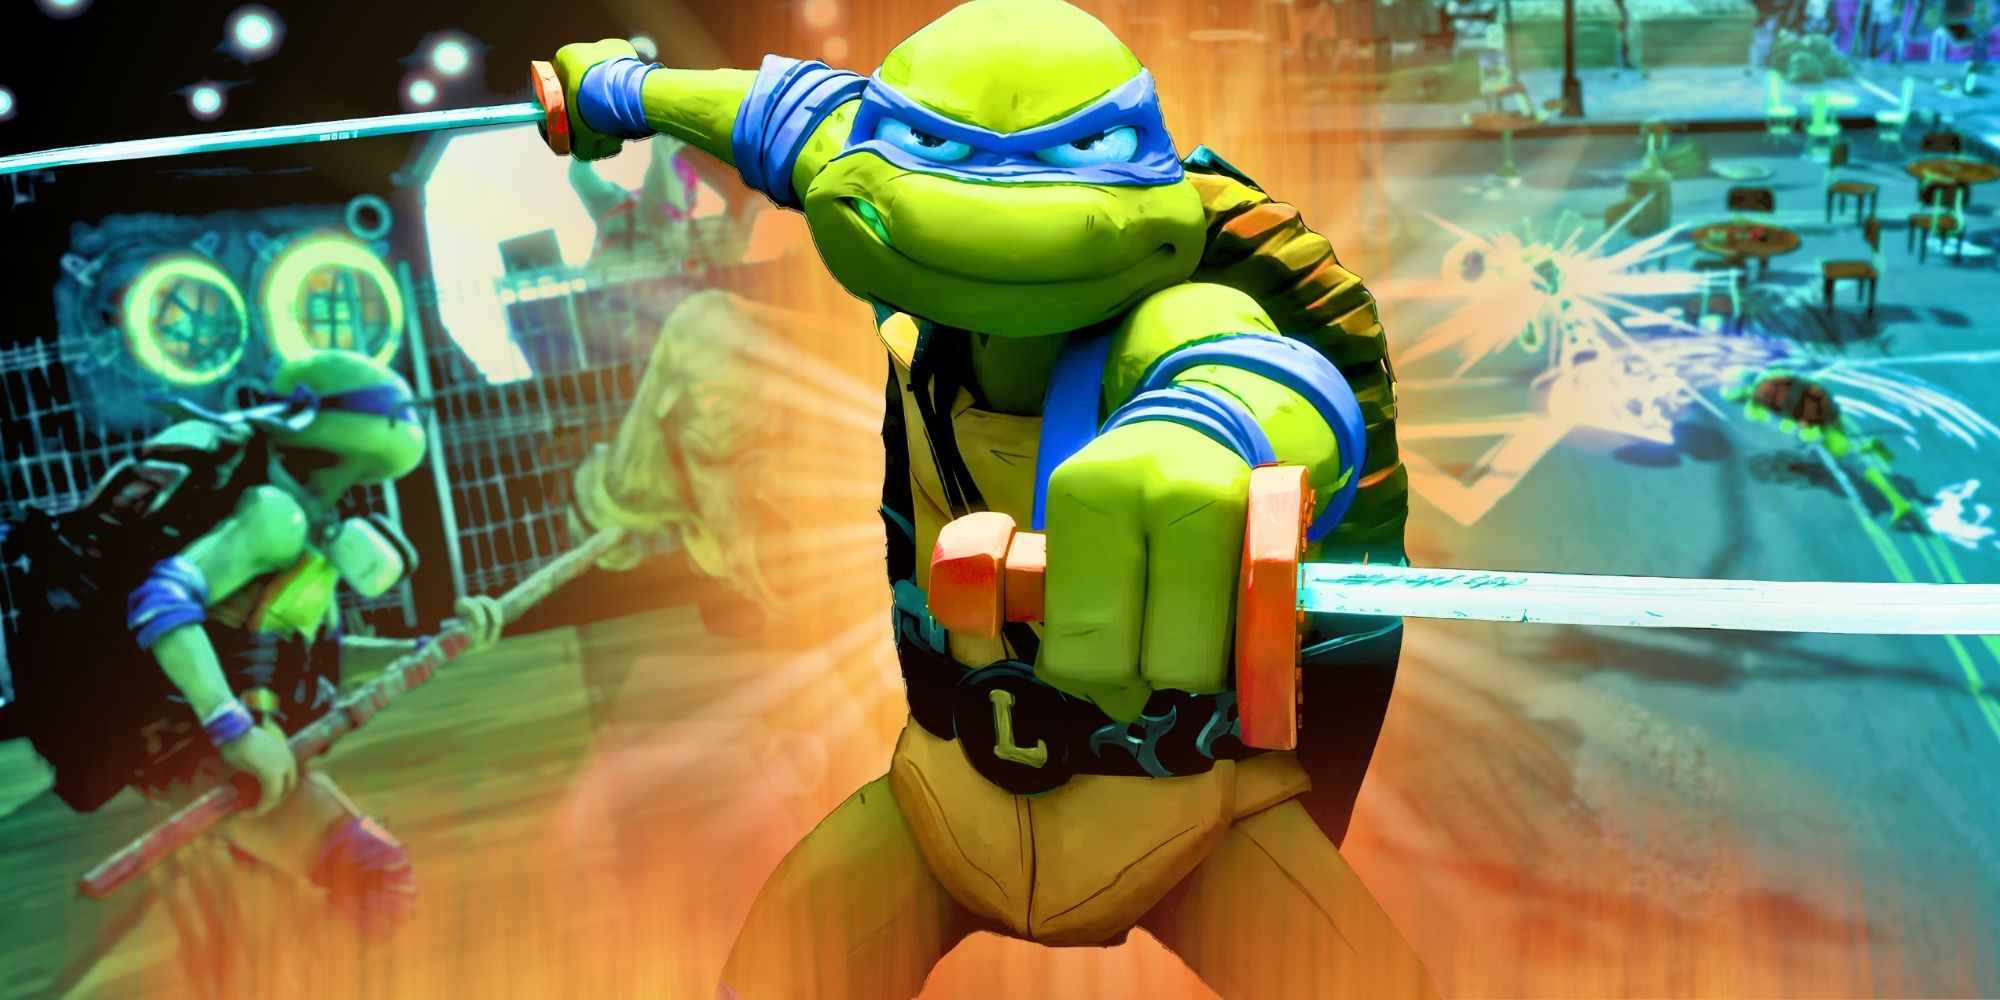 Teenage Mutant Ninja Turtles: Mutants Unleashed - Historia, jugabilidad y ventana de lanzamiento